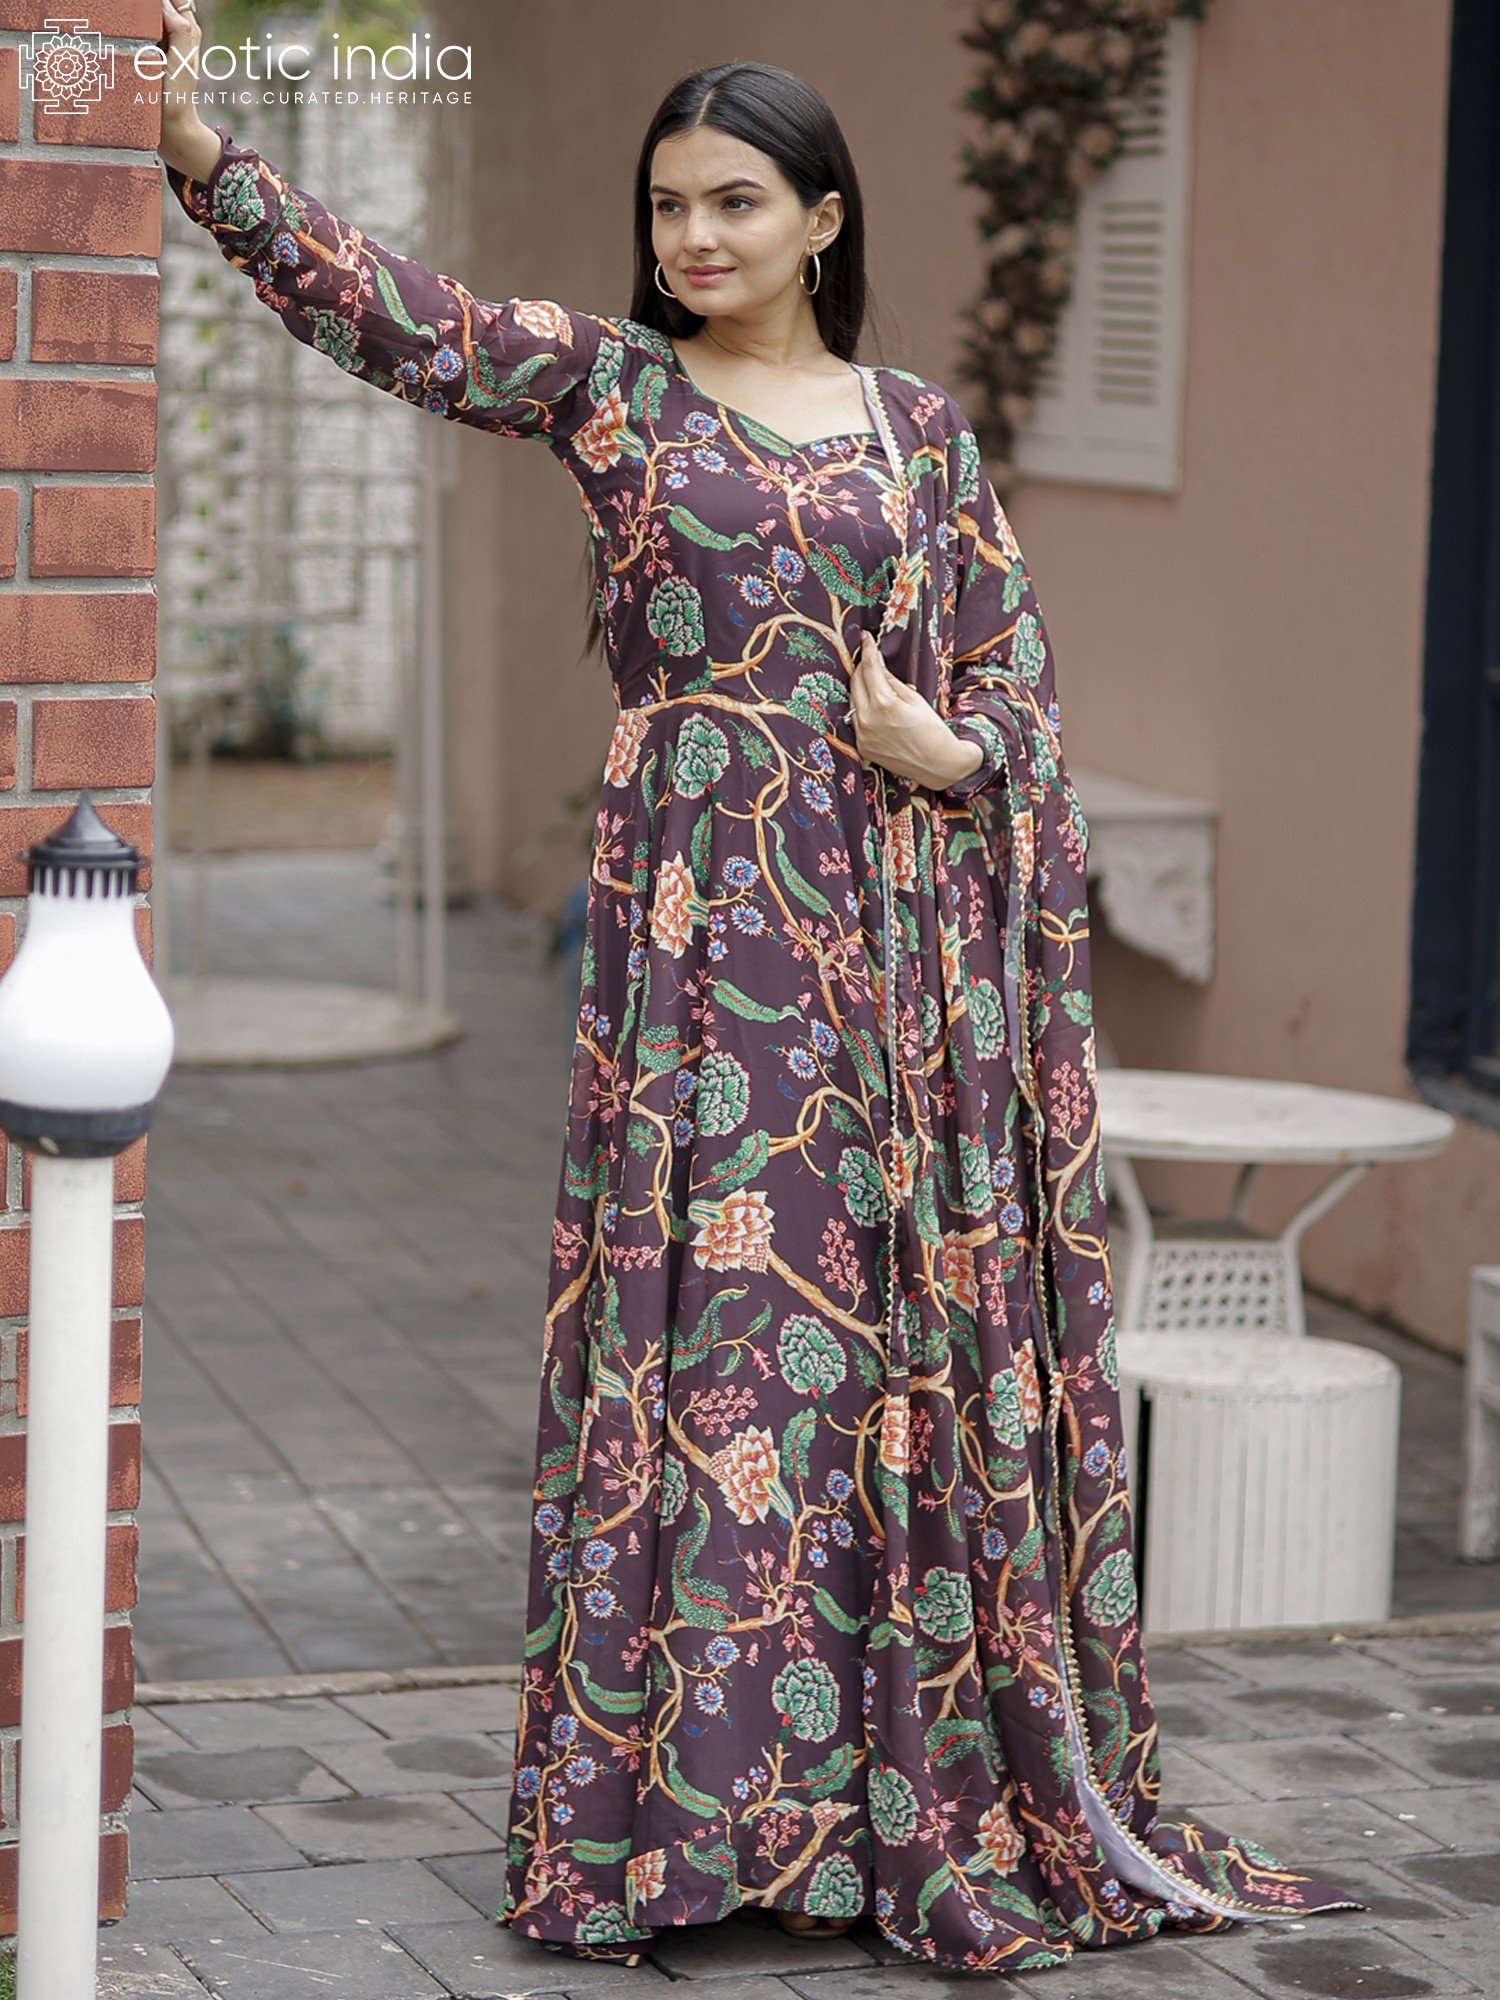 Gorgeous Designer Anarkali Gown With Double Border Lace, Anarkali Gown,  Long Anarkali Dress, Long Anarkali Gown With Dupatta, लॉन्ग अनारकली गाउन -  Prathmesh Enterprises, Mumbai | ID: 26134867233